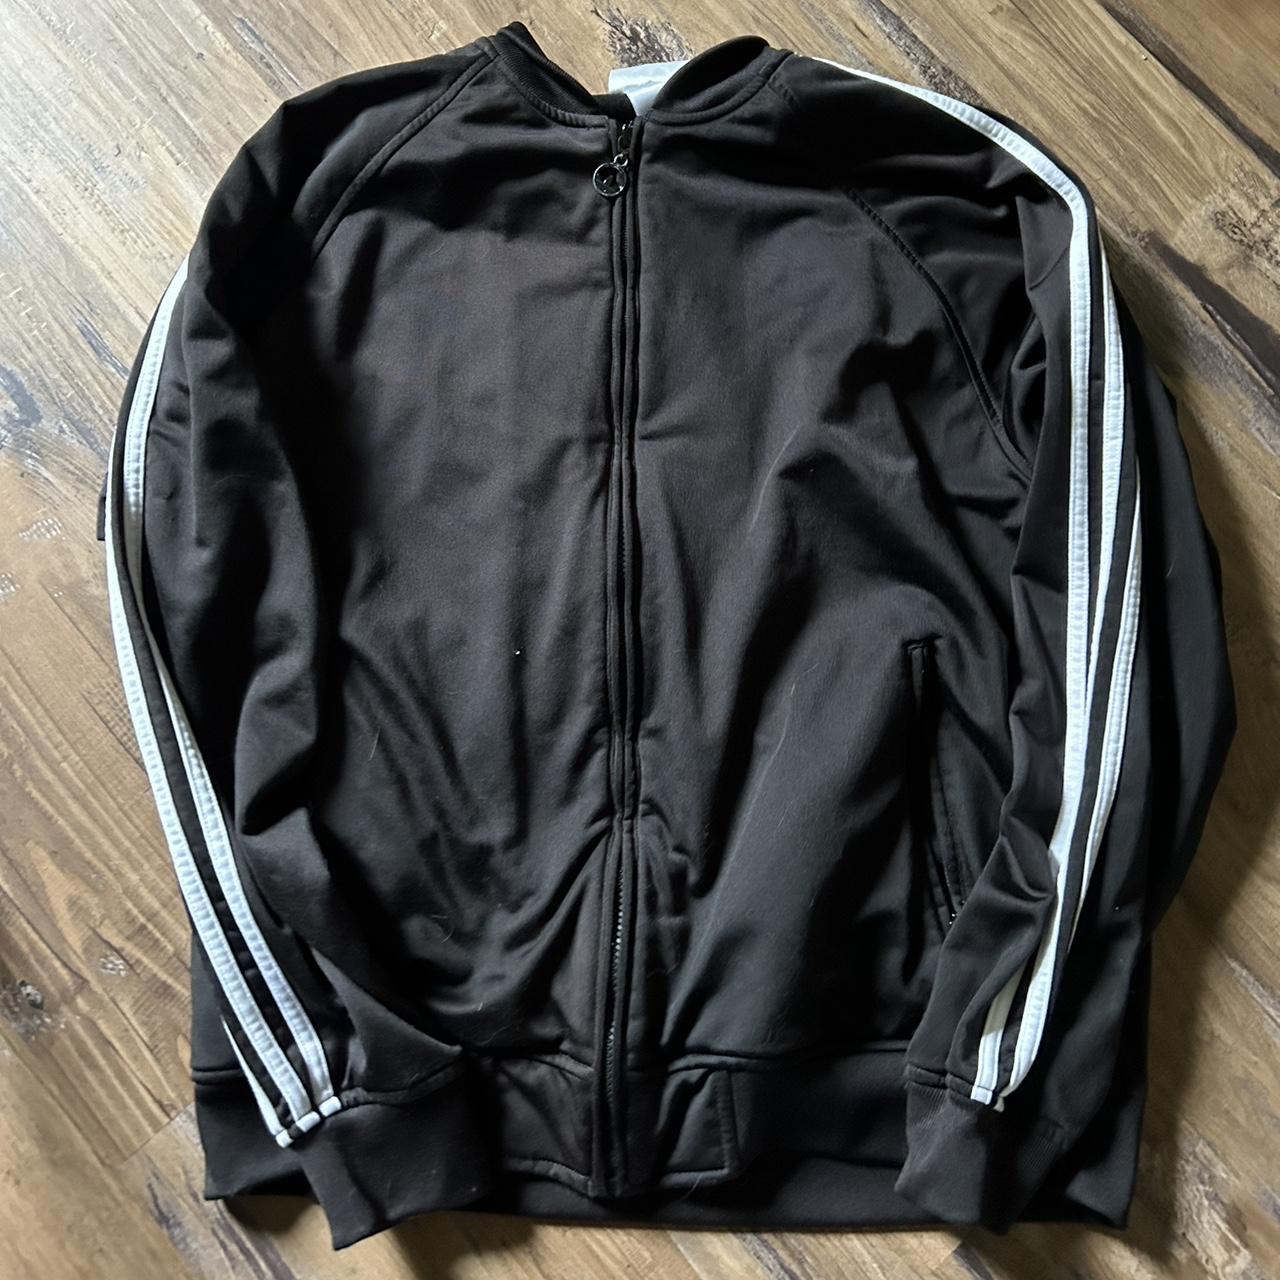 Vintage adidas track jacket - Depop